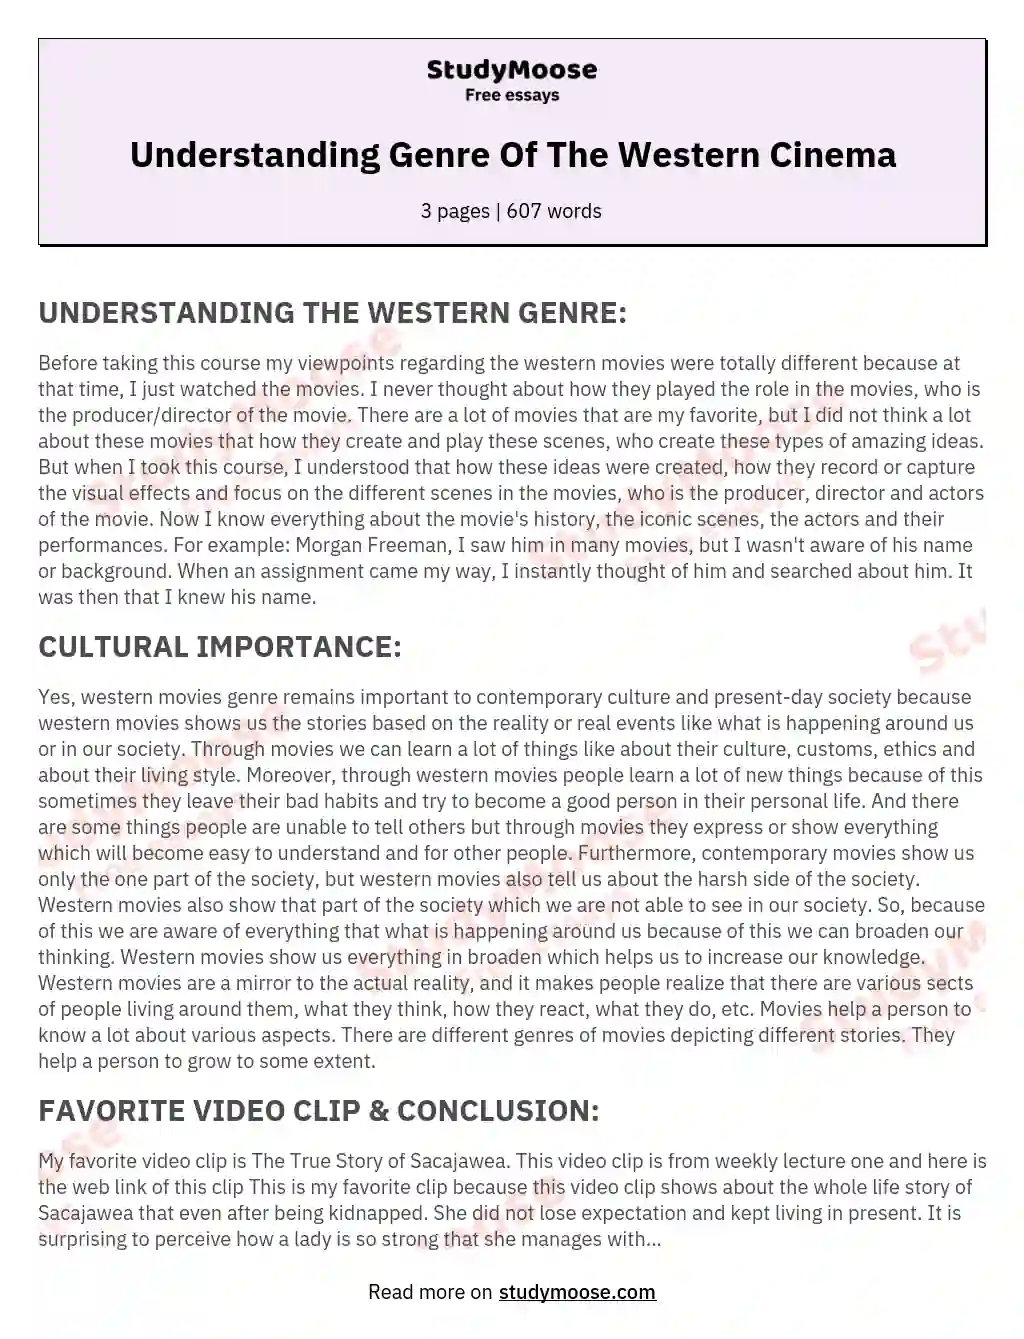 Understanding Genre Of The Western Cinema essay